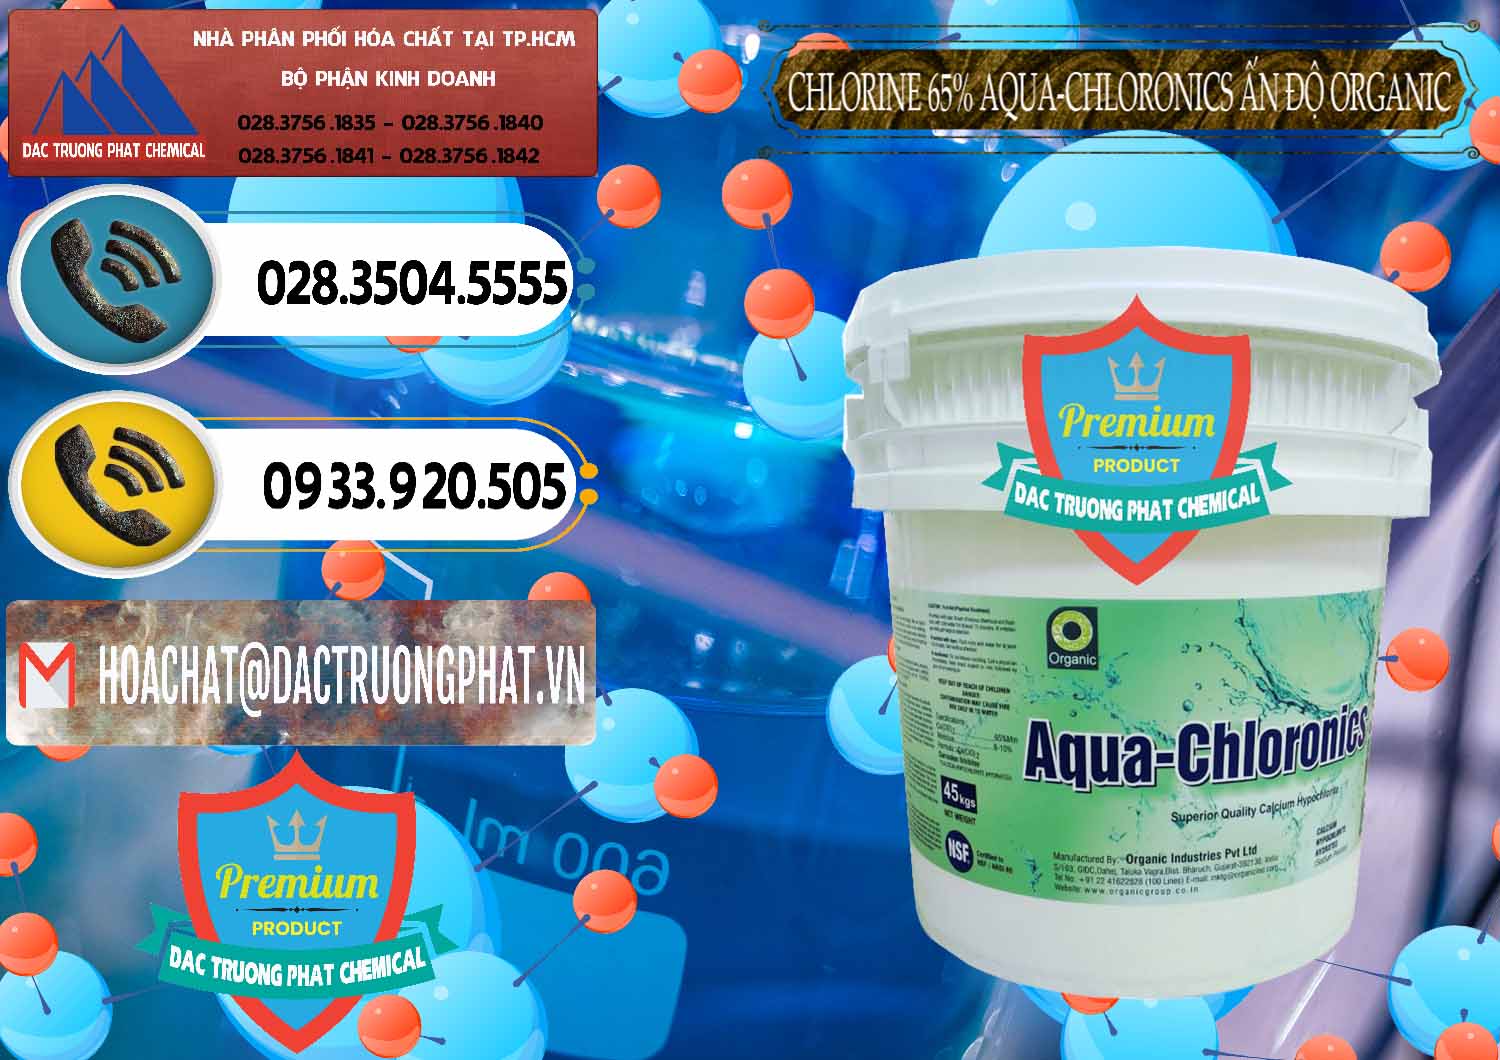 Đơn vị phân phối _ bán Chlorine – Clorin 65% Aqua-Chloronics Ấn Độ Organic India - 0210 - Nơi chuyên nhập khẩu - phân phối hóa chất tại TP.HCM - hoachatdetnhuom.vn